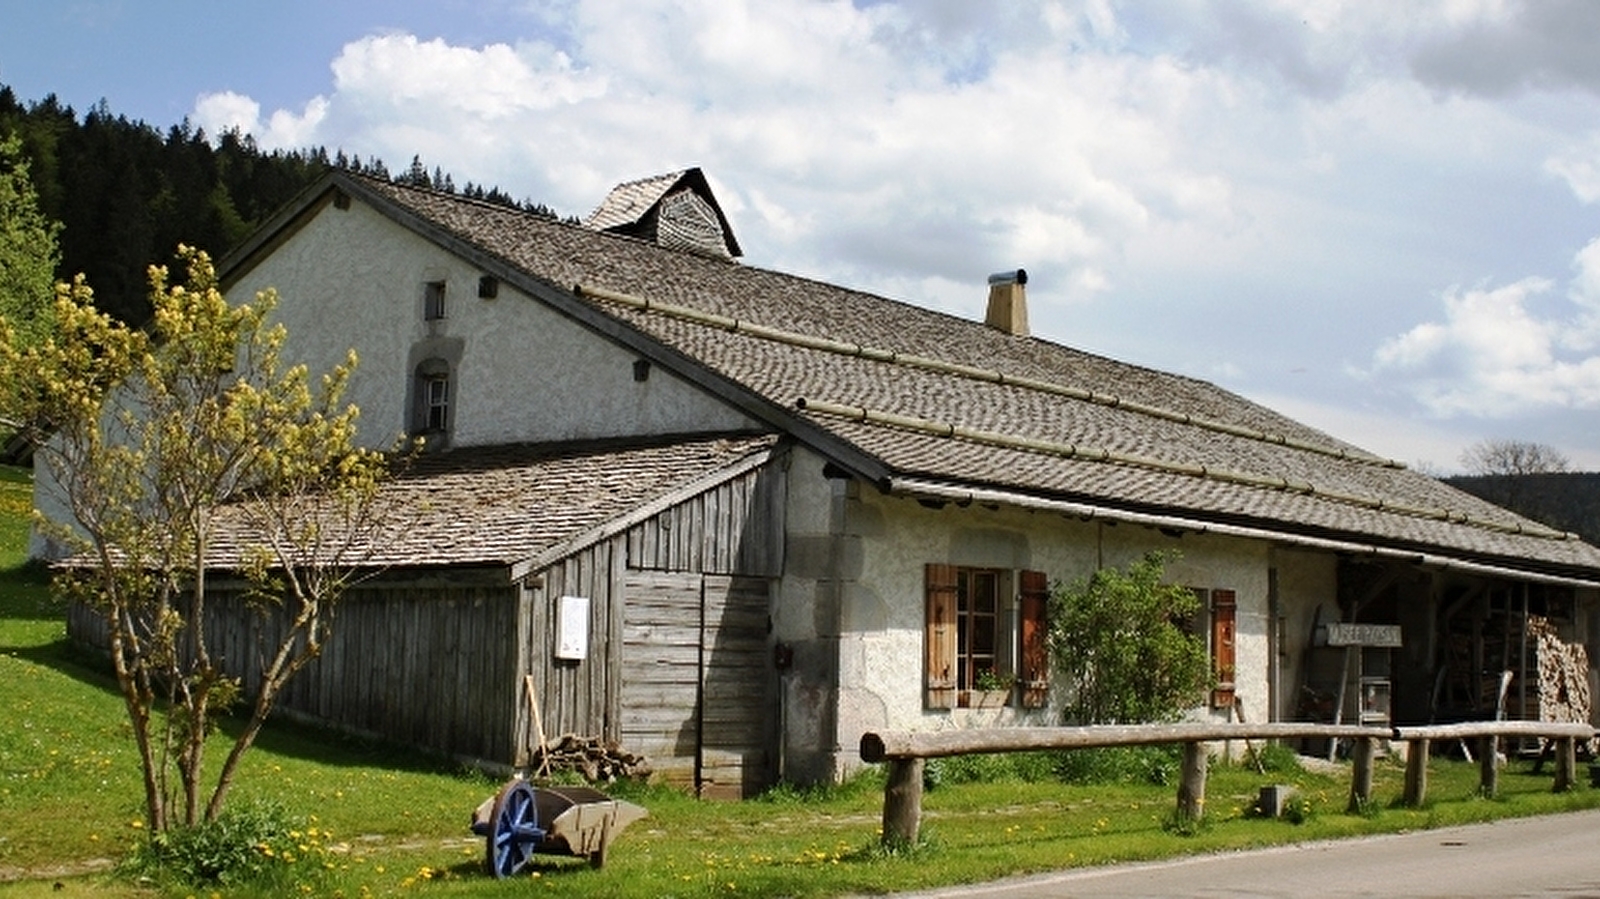 Visite ludique pour découvrir comment vivre en autonomie dans les montagnes du Haut-Doubs